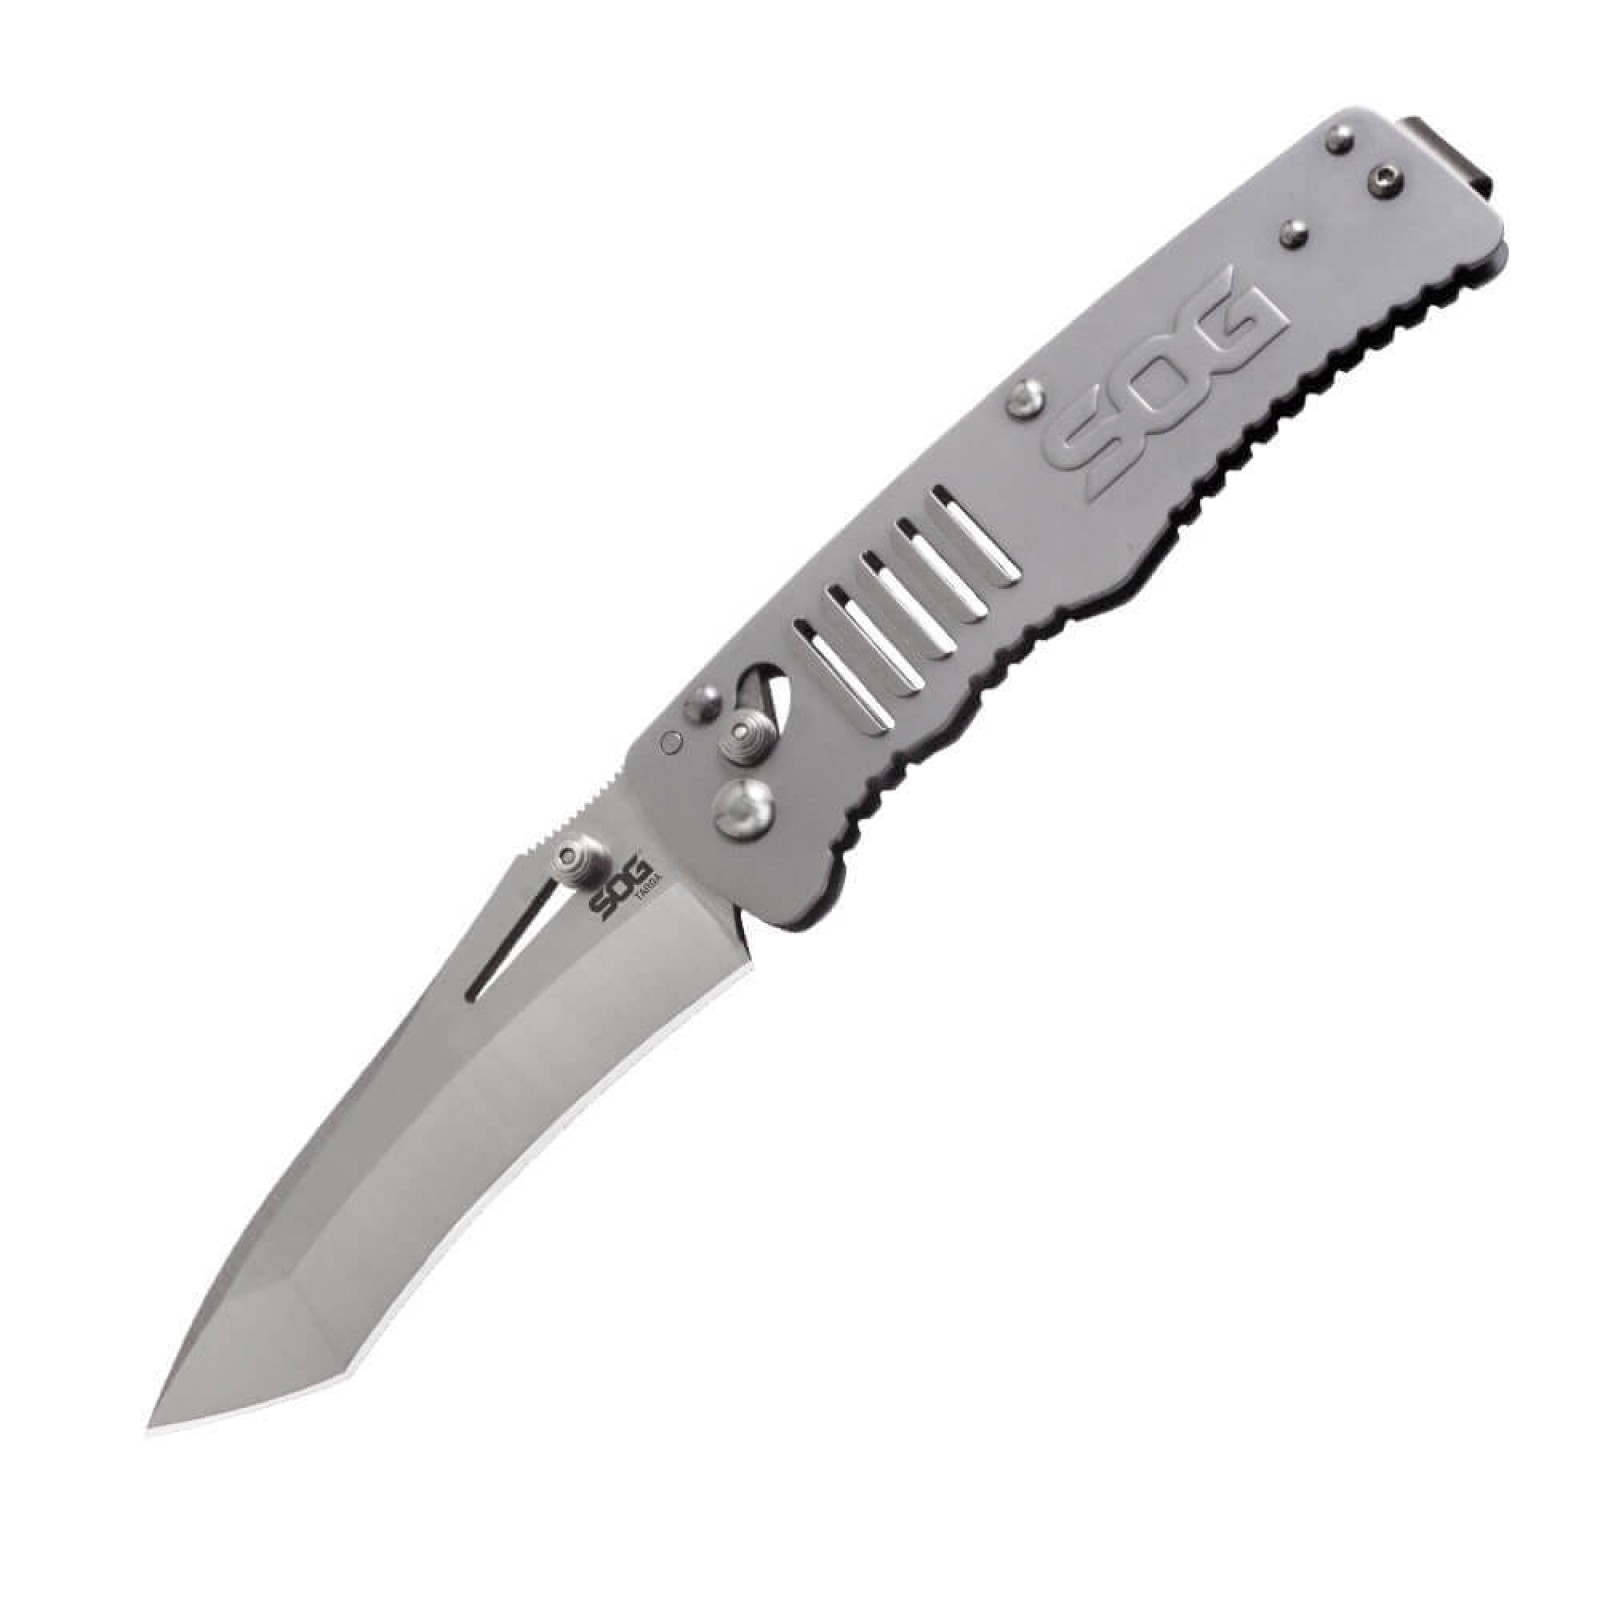 Складной нож Targa Satin - SOG TG1001, сталь VG-10, рукоять нержавеющая сталь, серый - фото 4